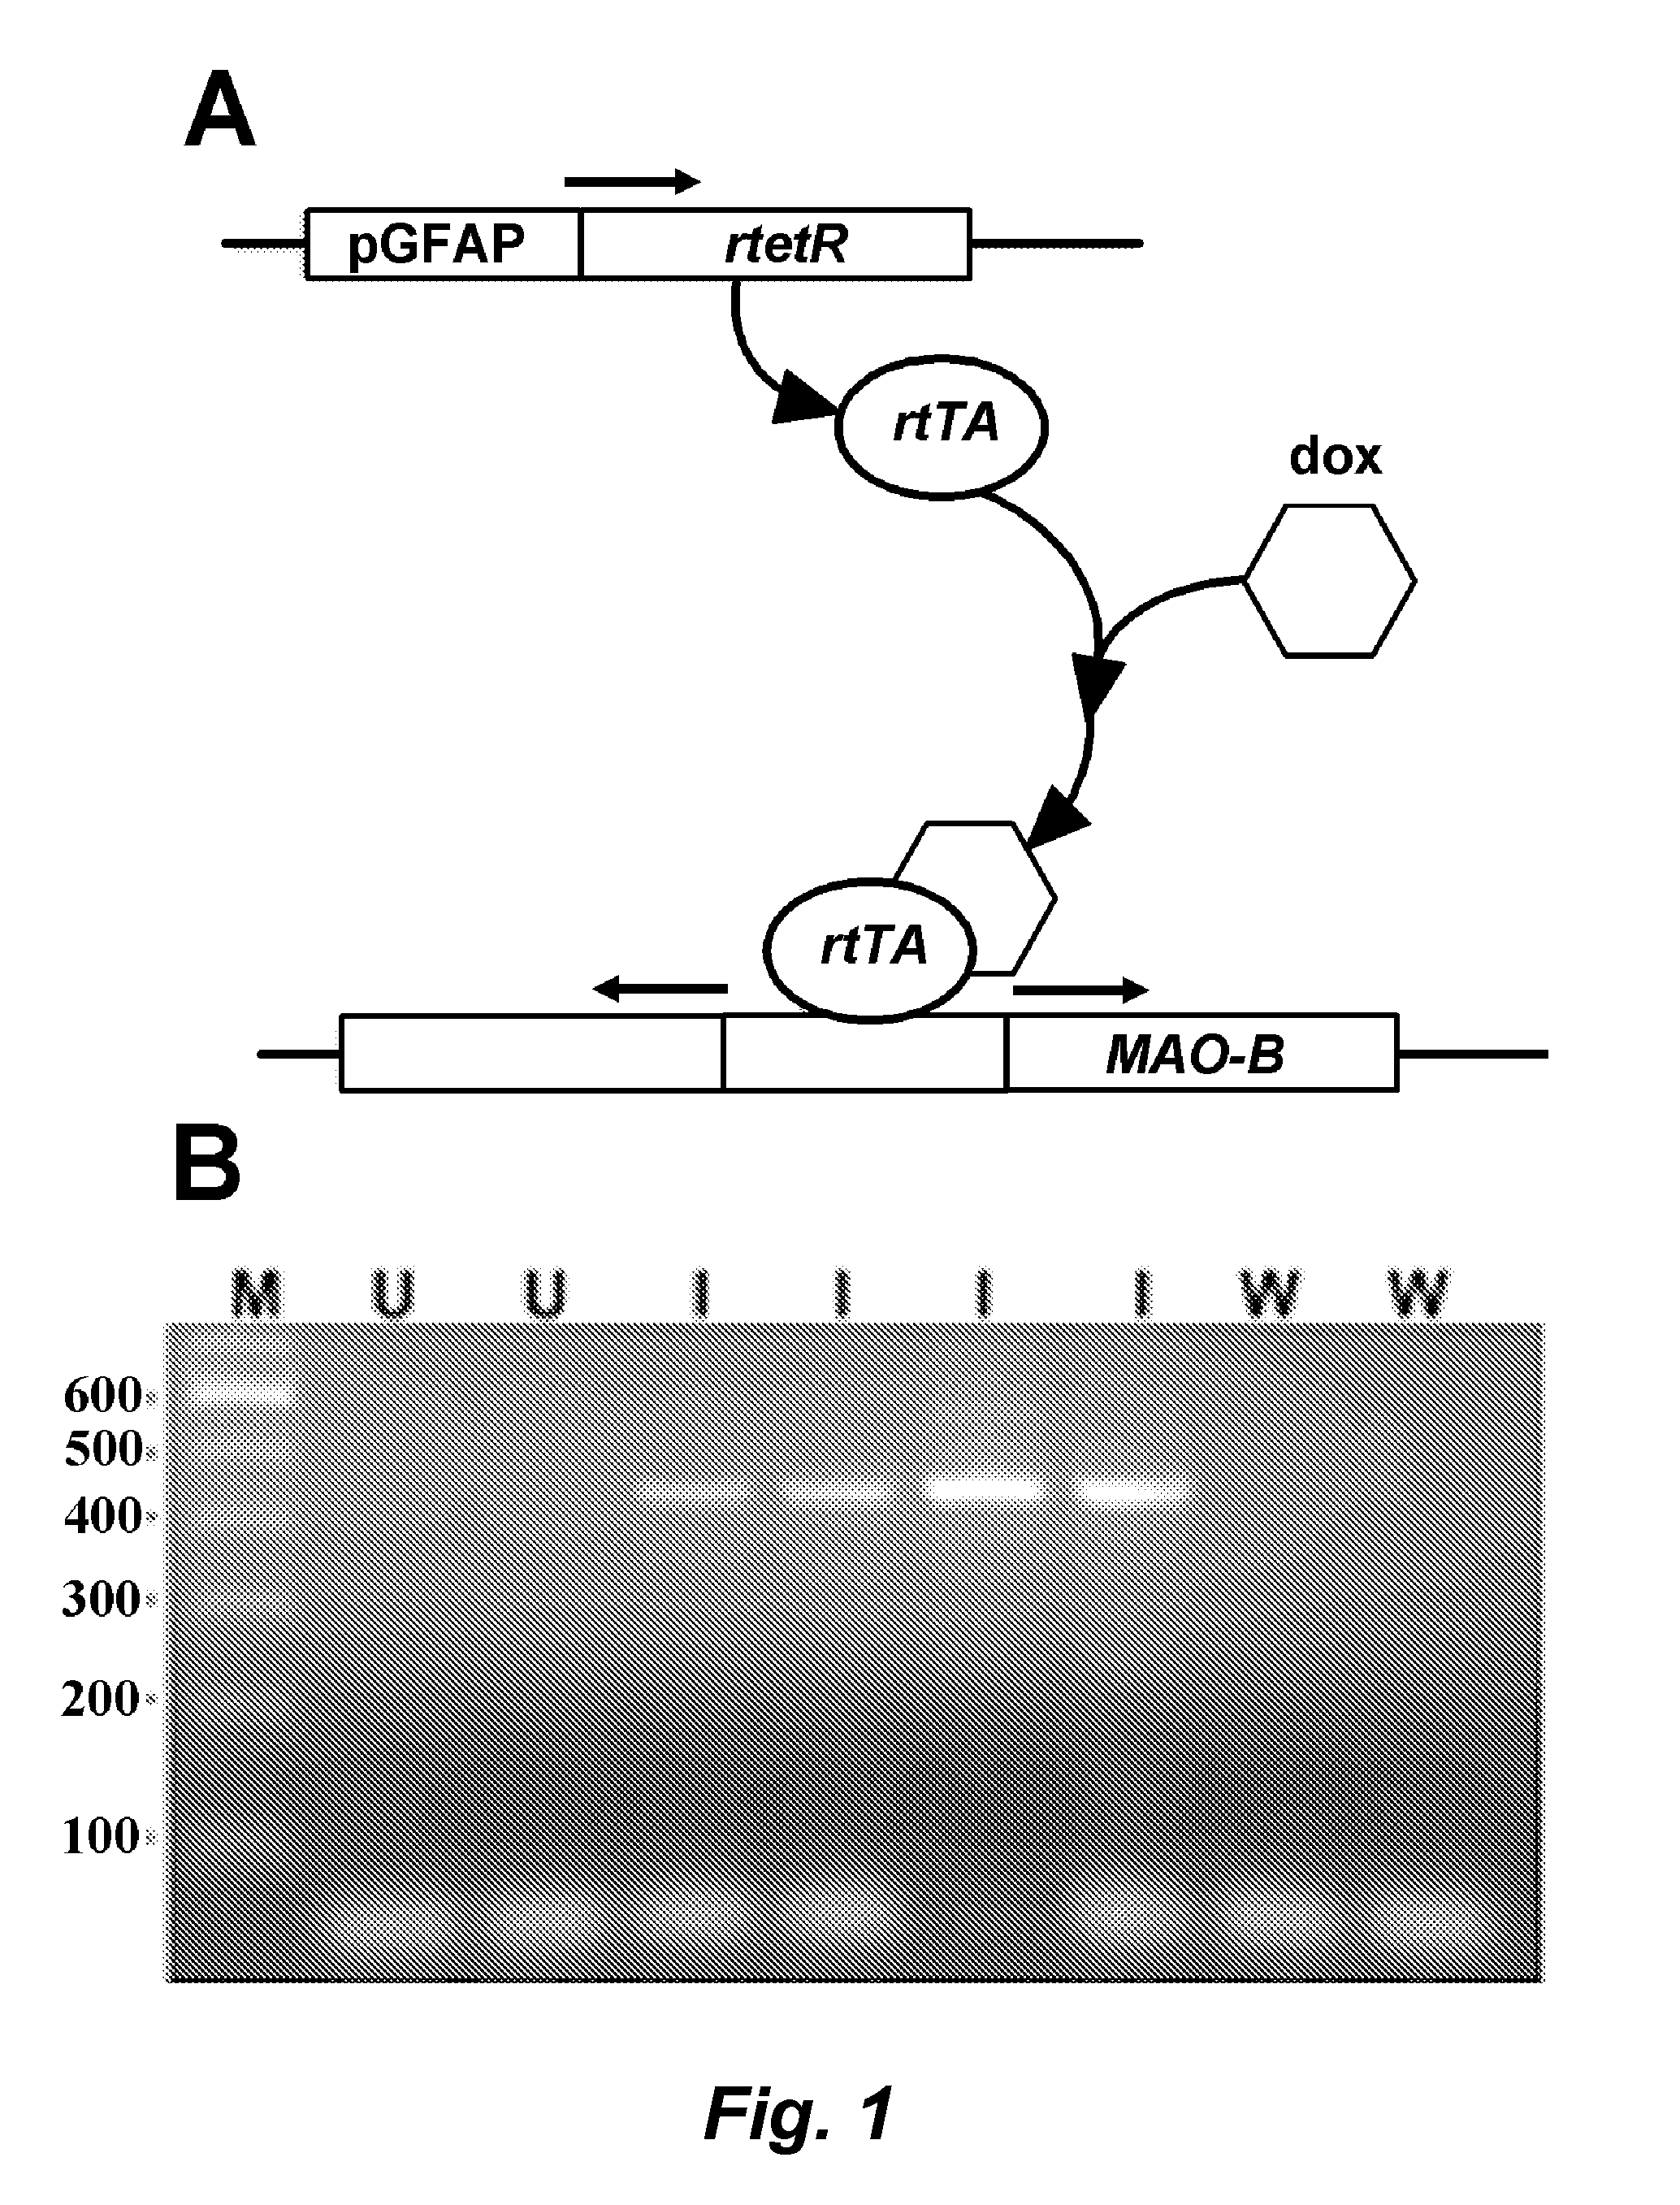 Mao-b elevation as an early parkinson's disease biomarker